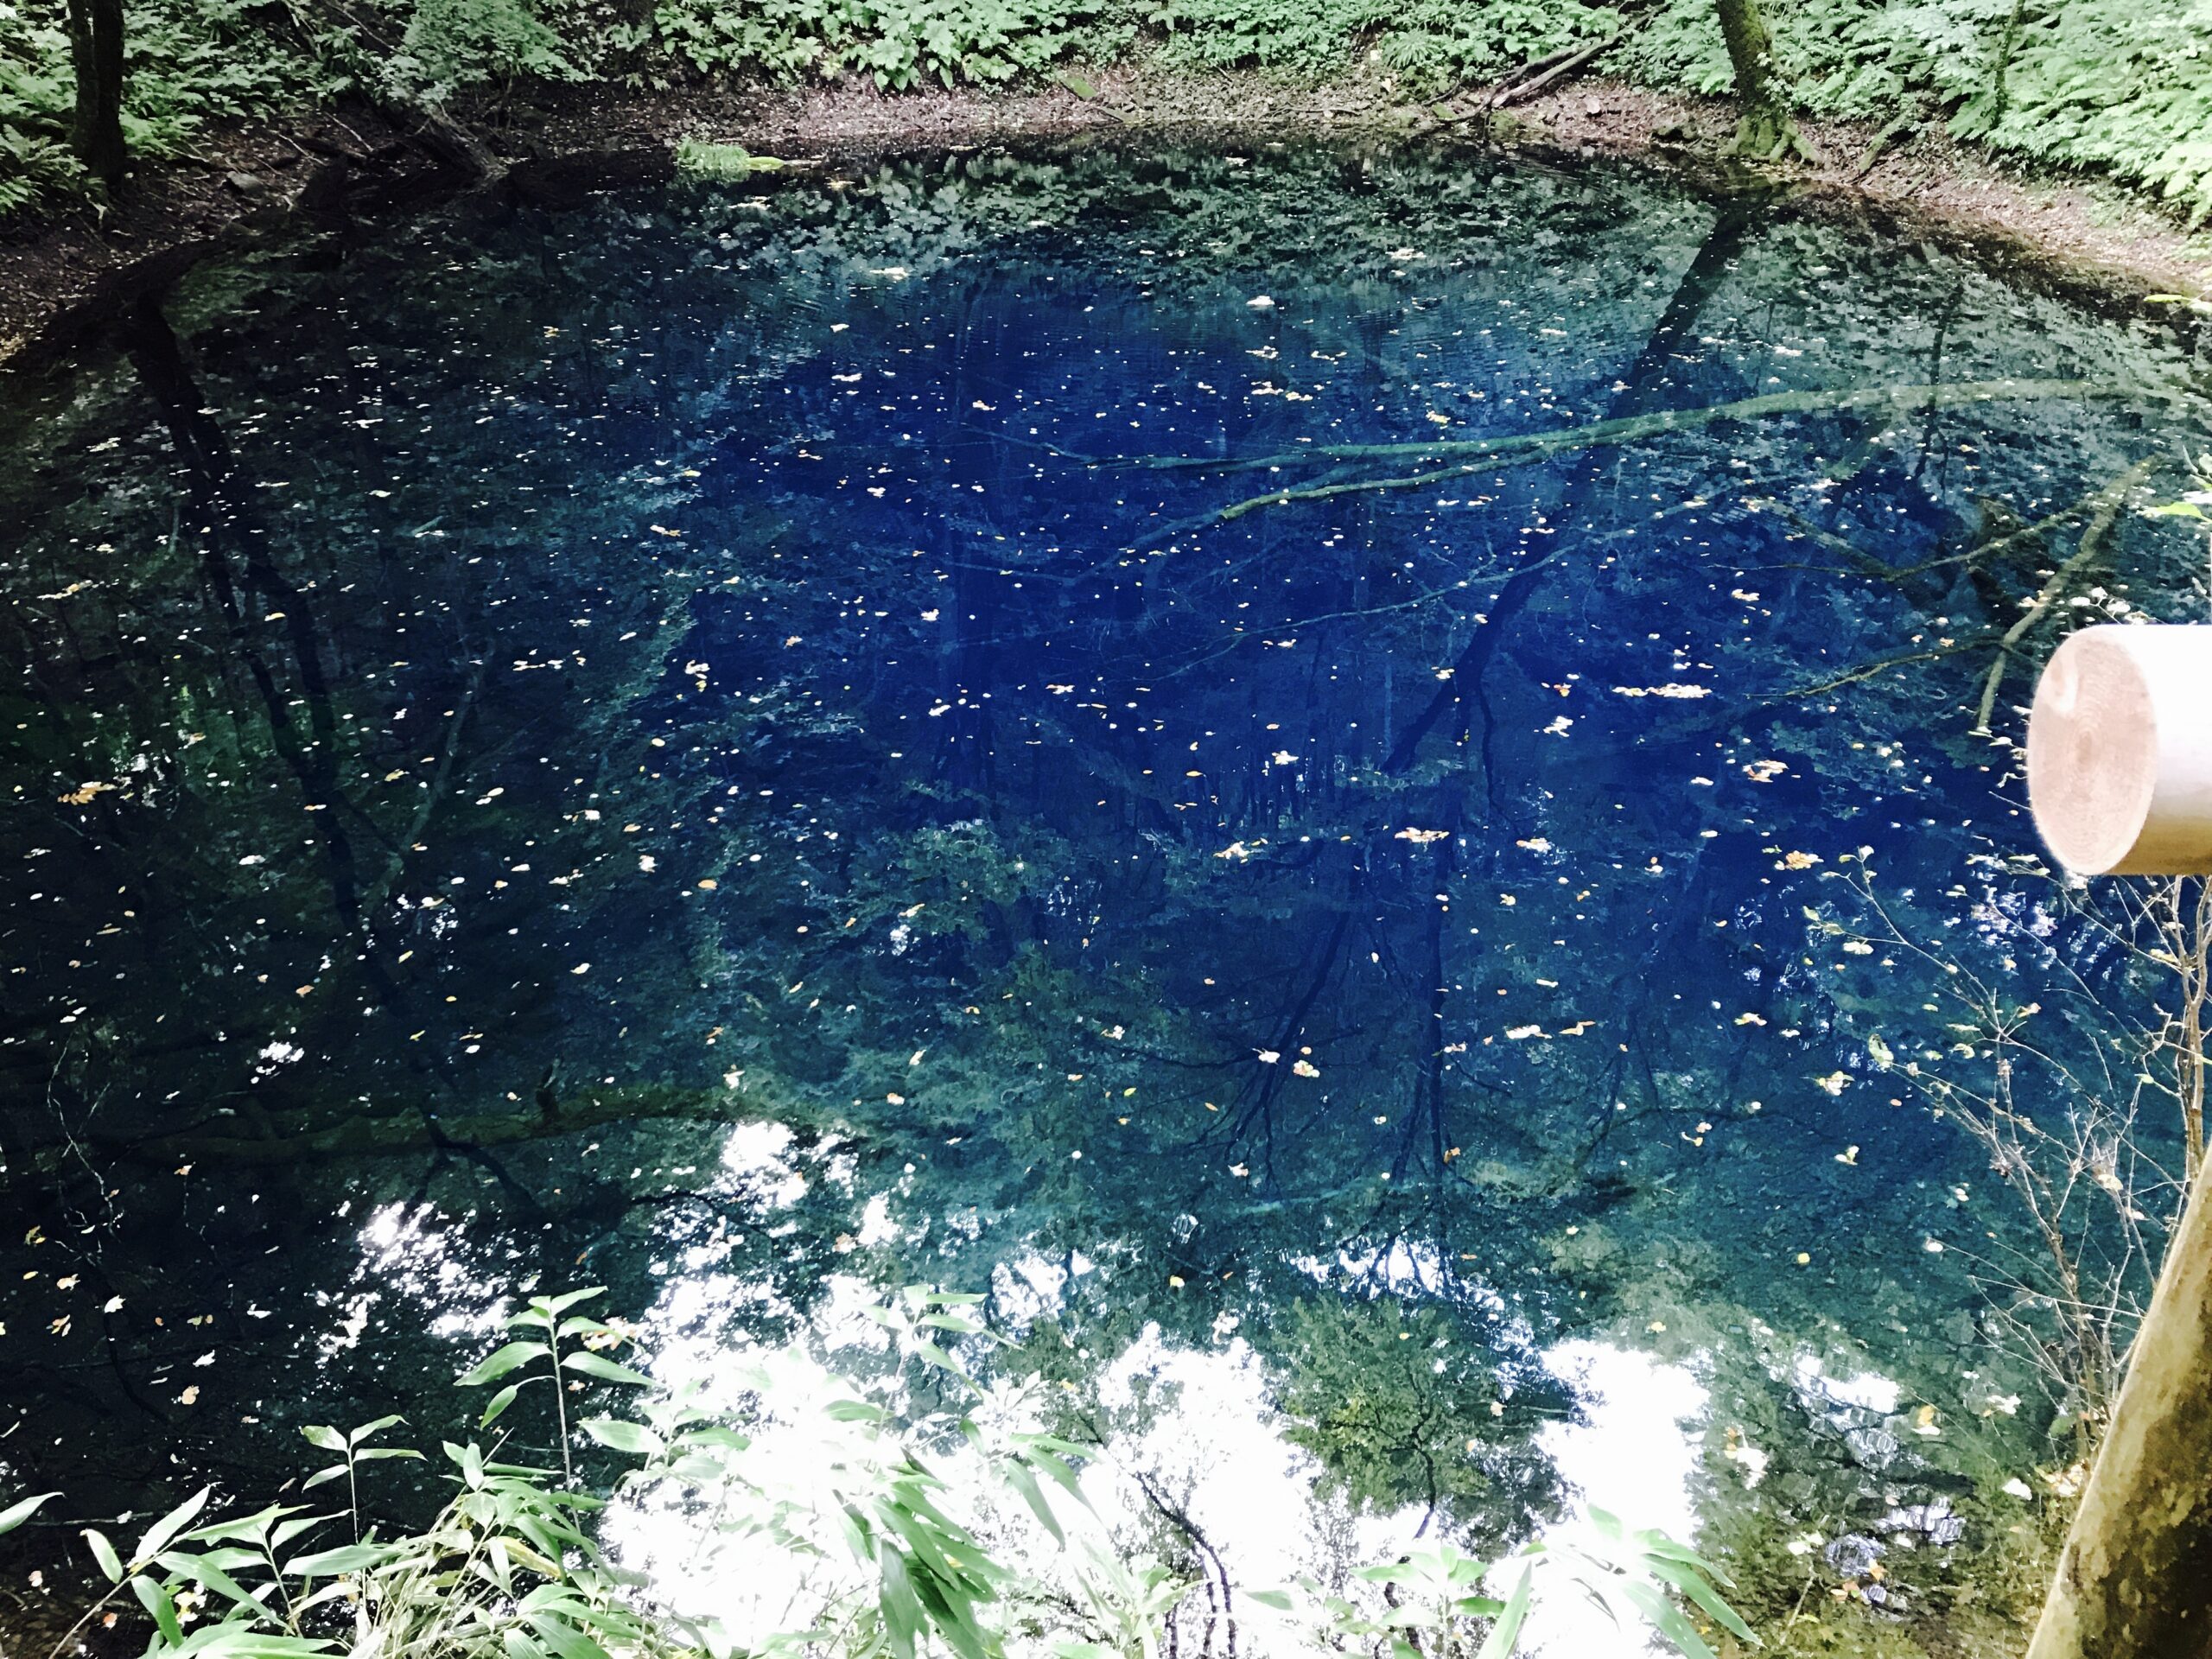 魔法のような青い神秘の池・青池in白神山地 | カコマナパパブログ